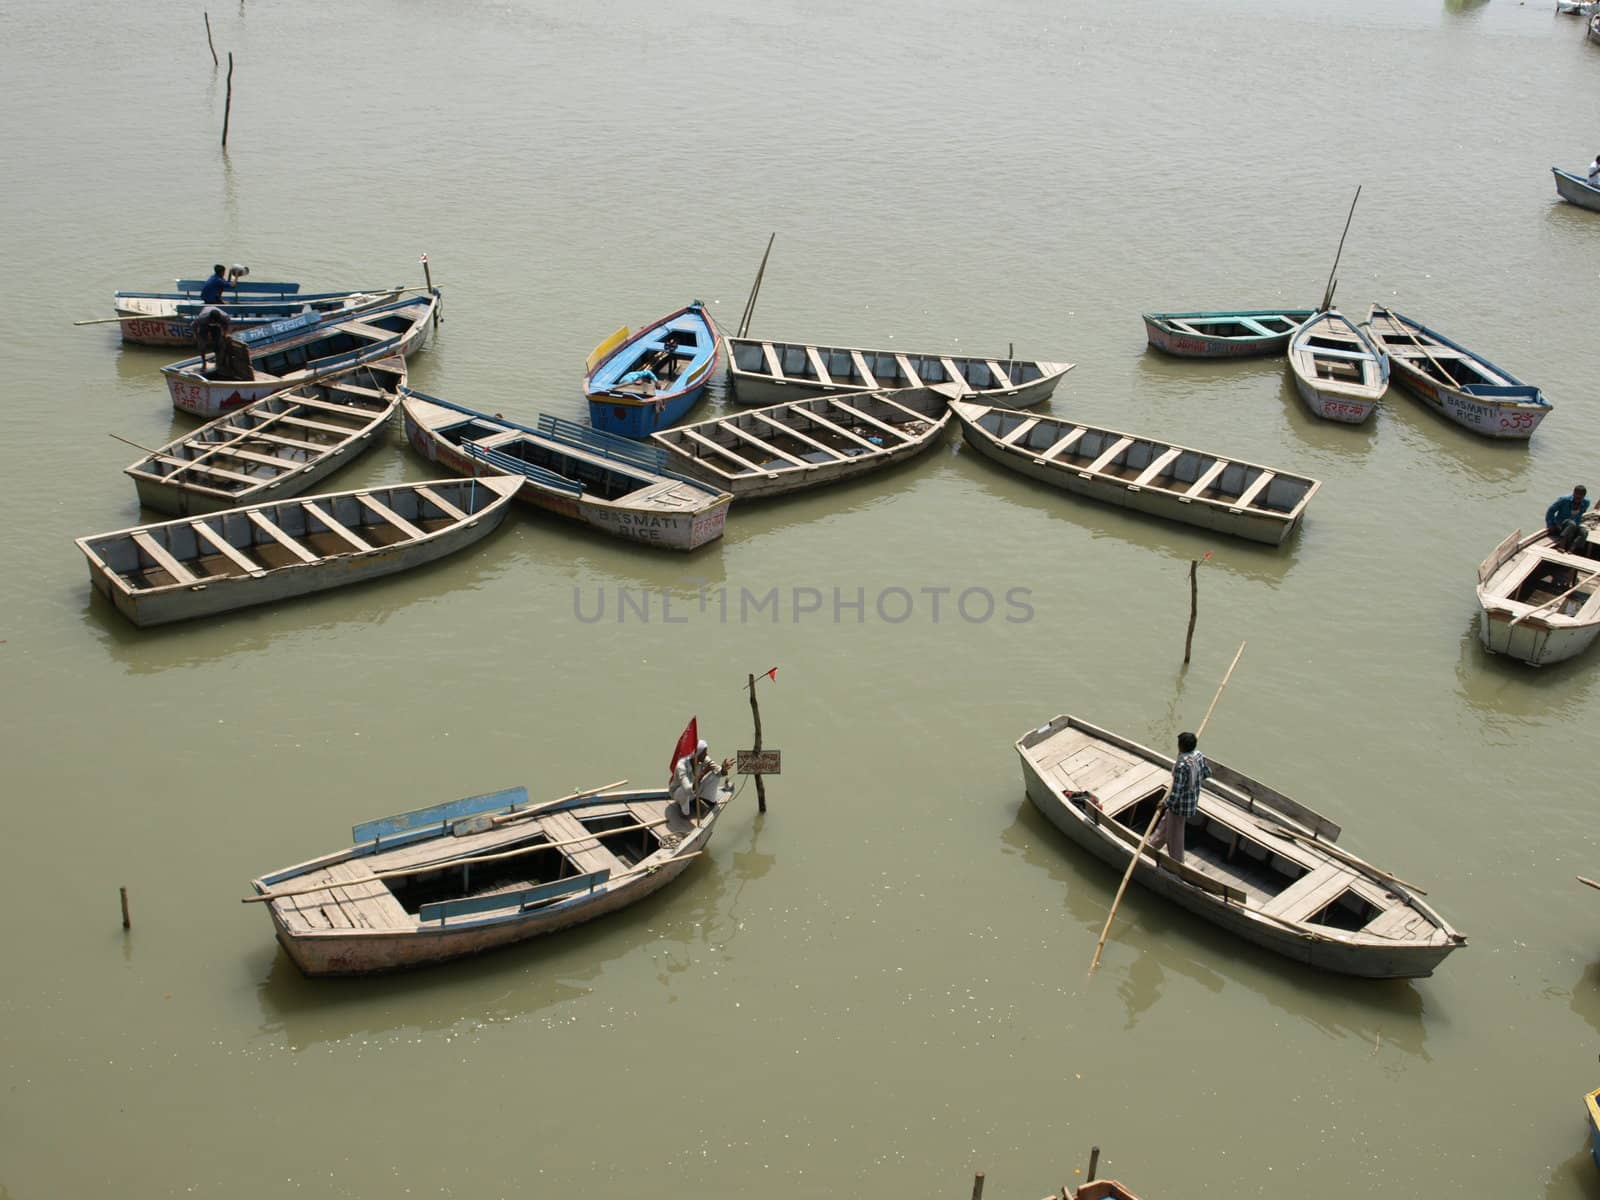 Boats at Gang river, India, summer 2011